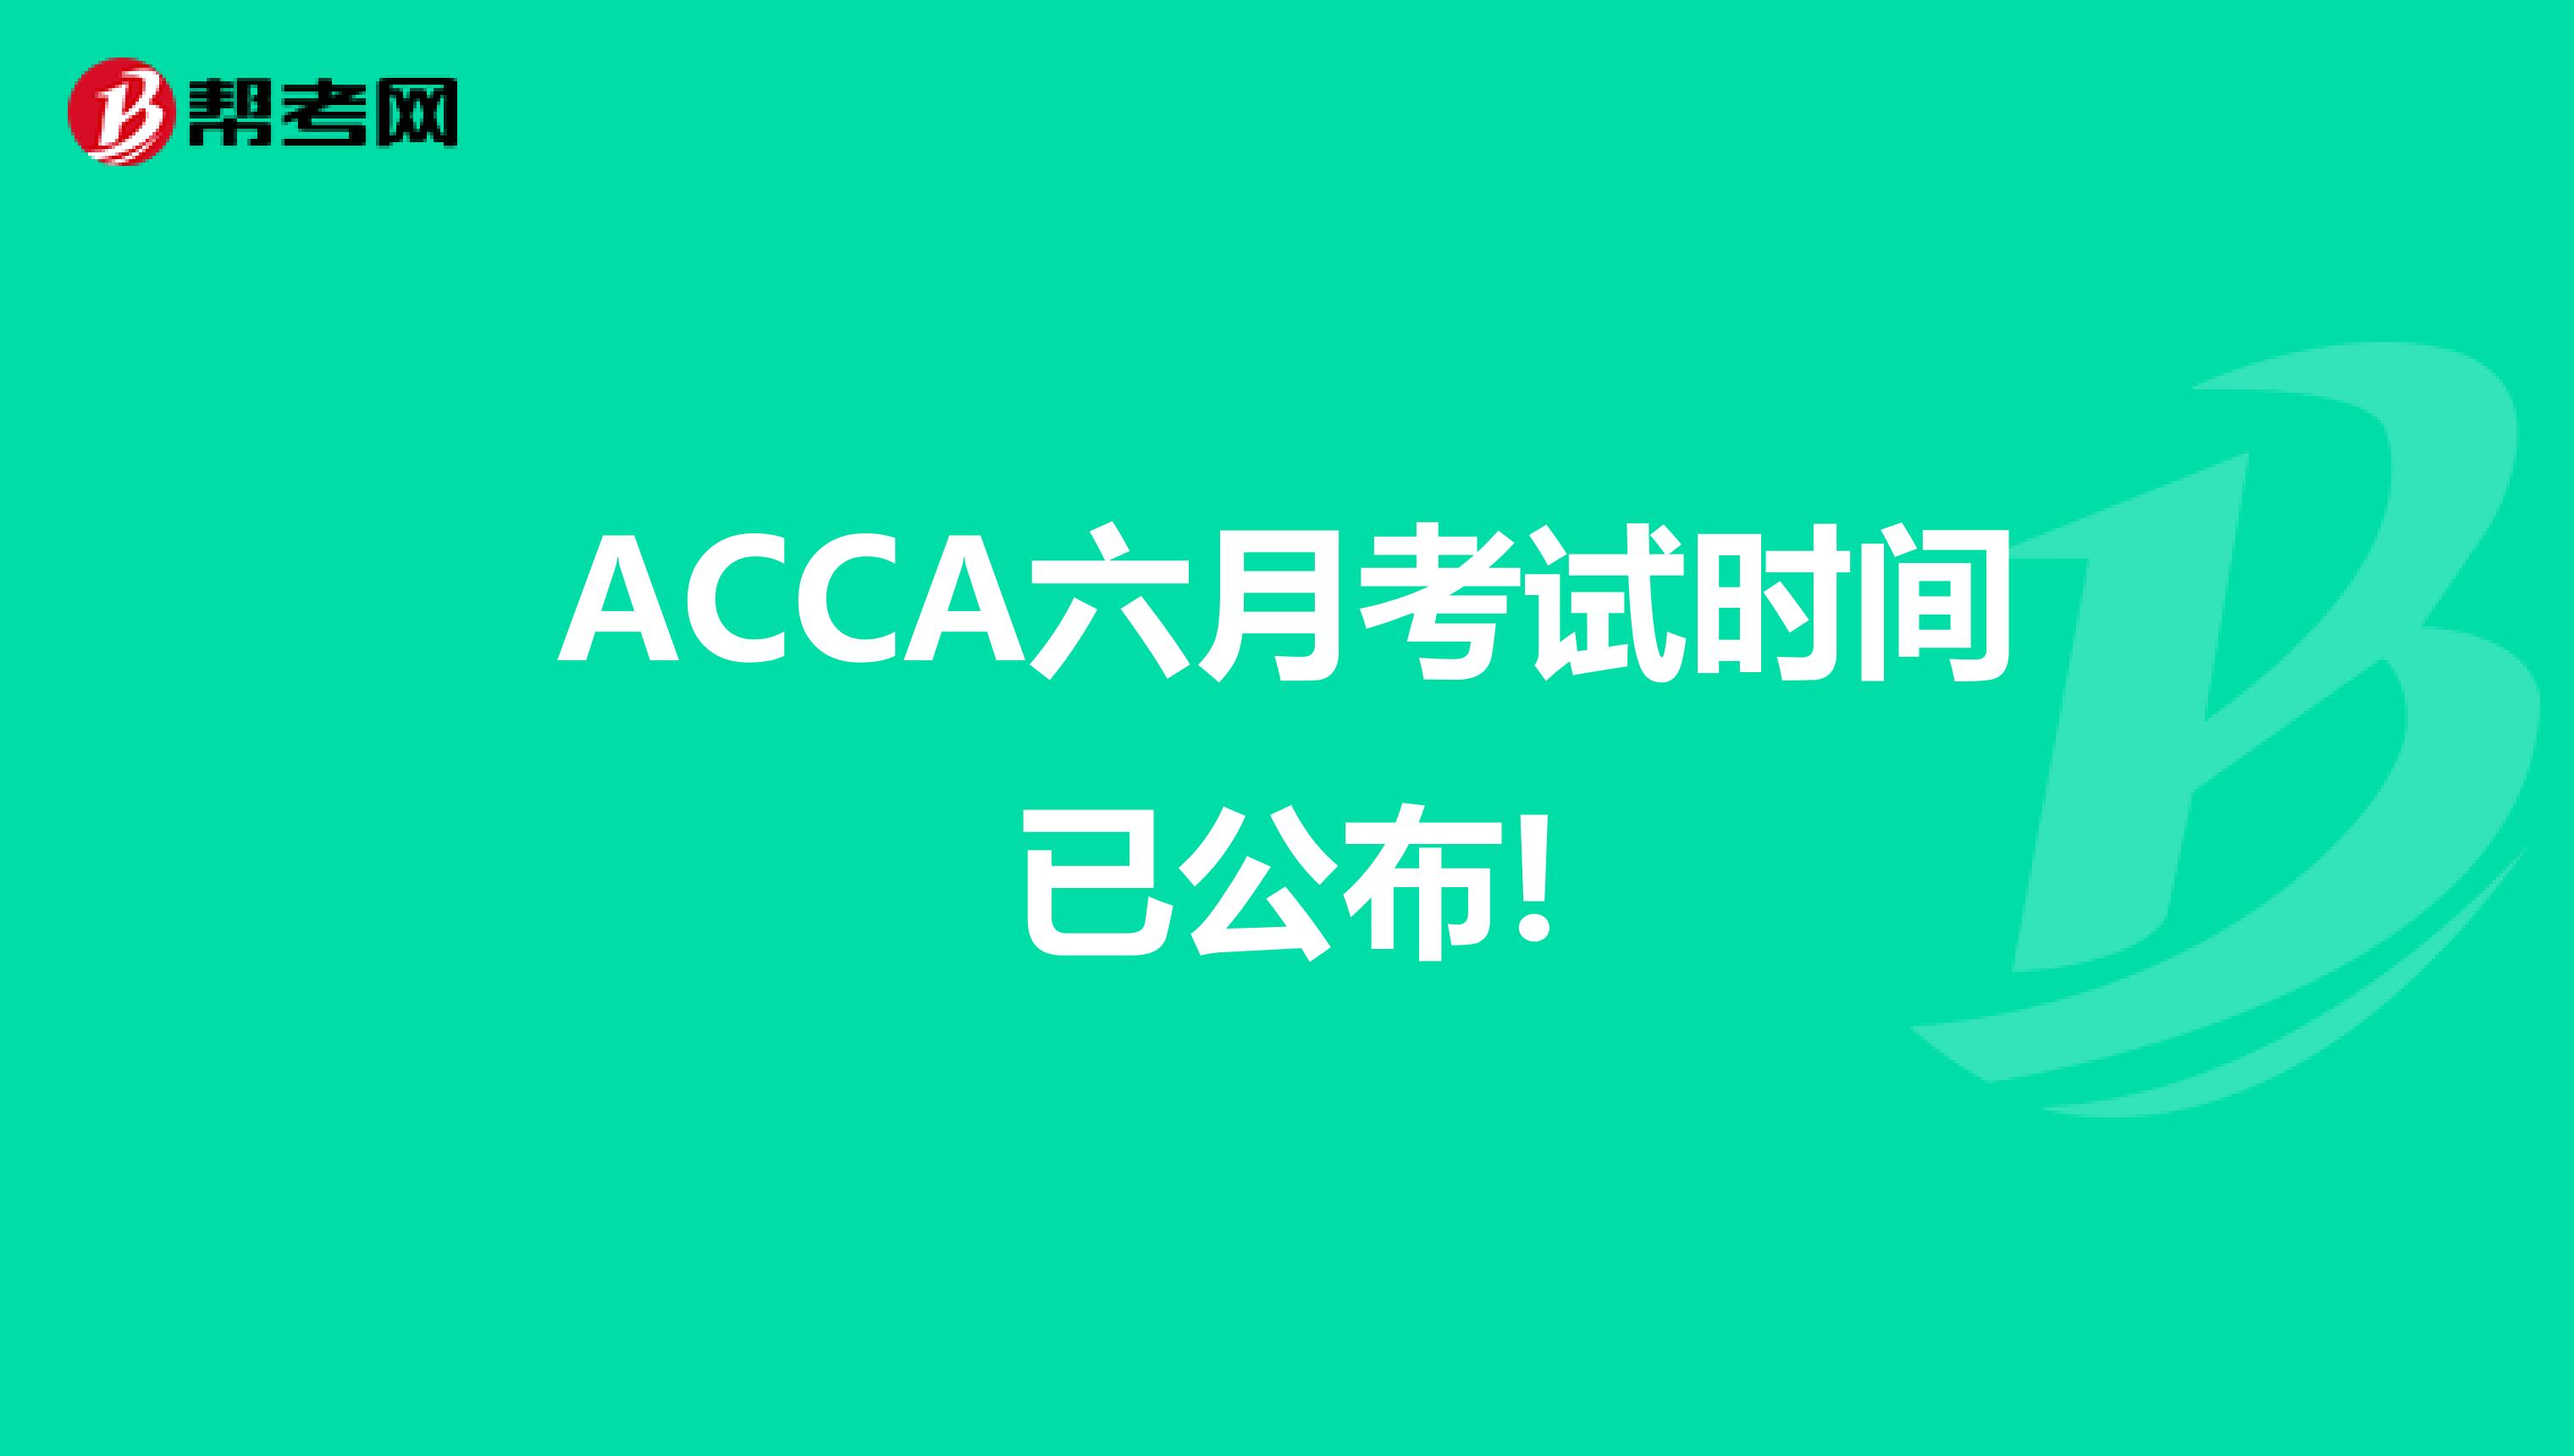 ACCA十二月考试时间已公布!